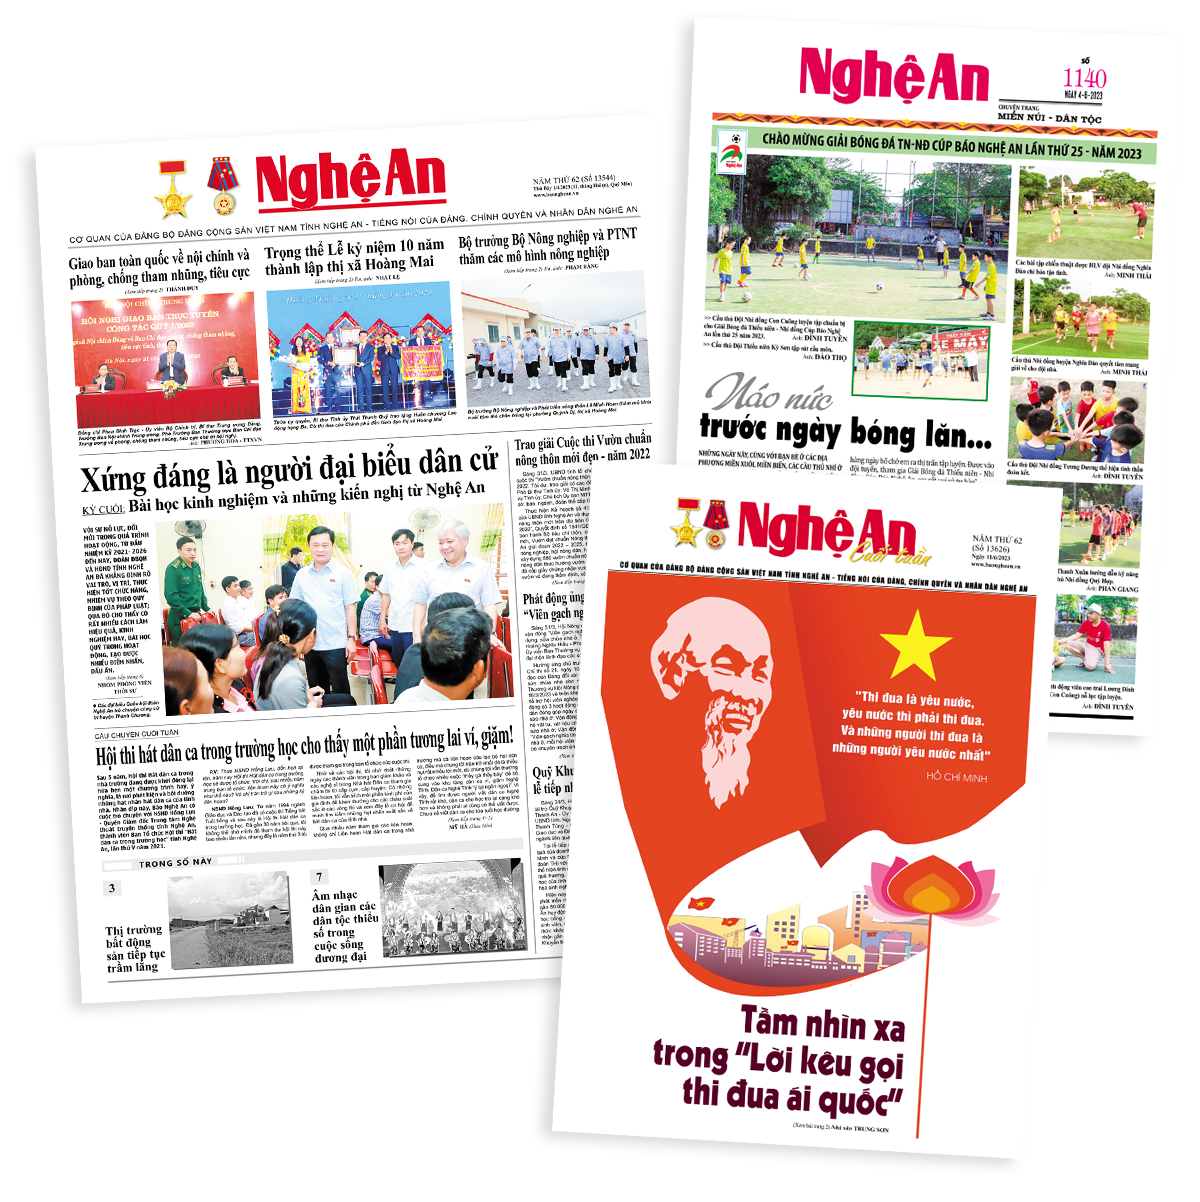 Các ấn phẩm nhật báo, báo cuối tuần và chuyên trang miền núi - dân tộc của Báo Nghệ An.